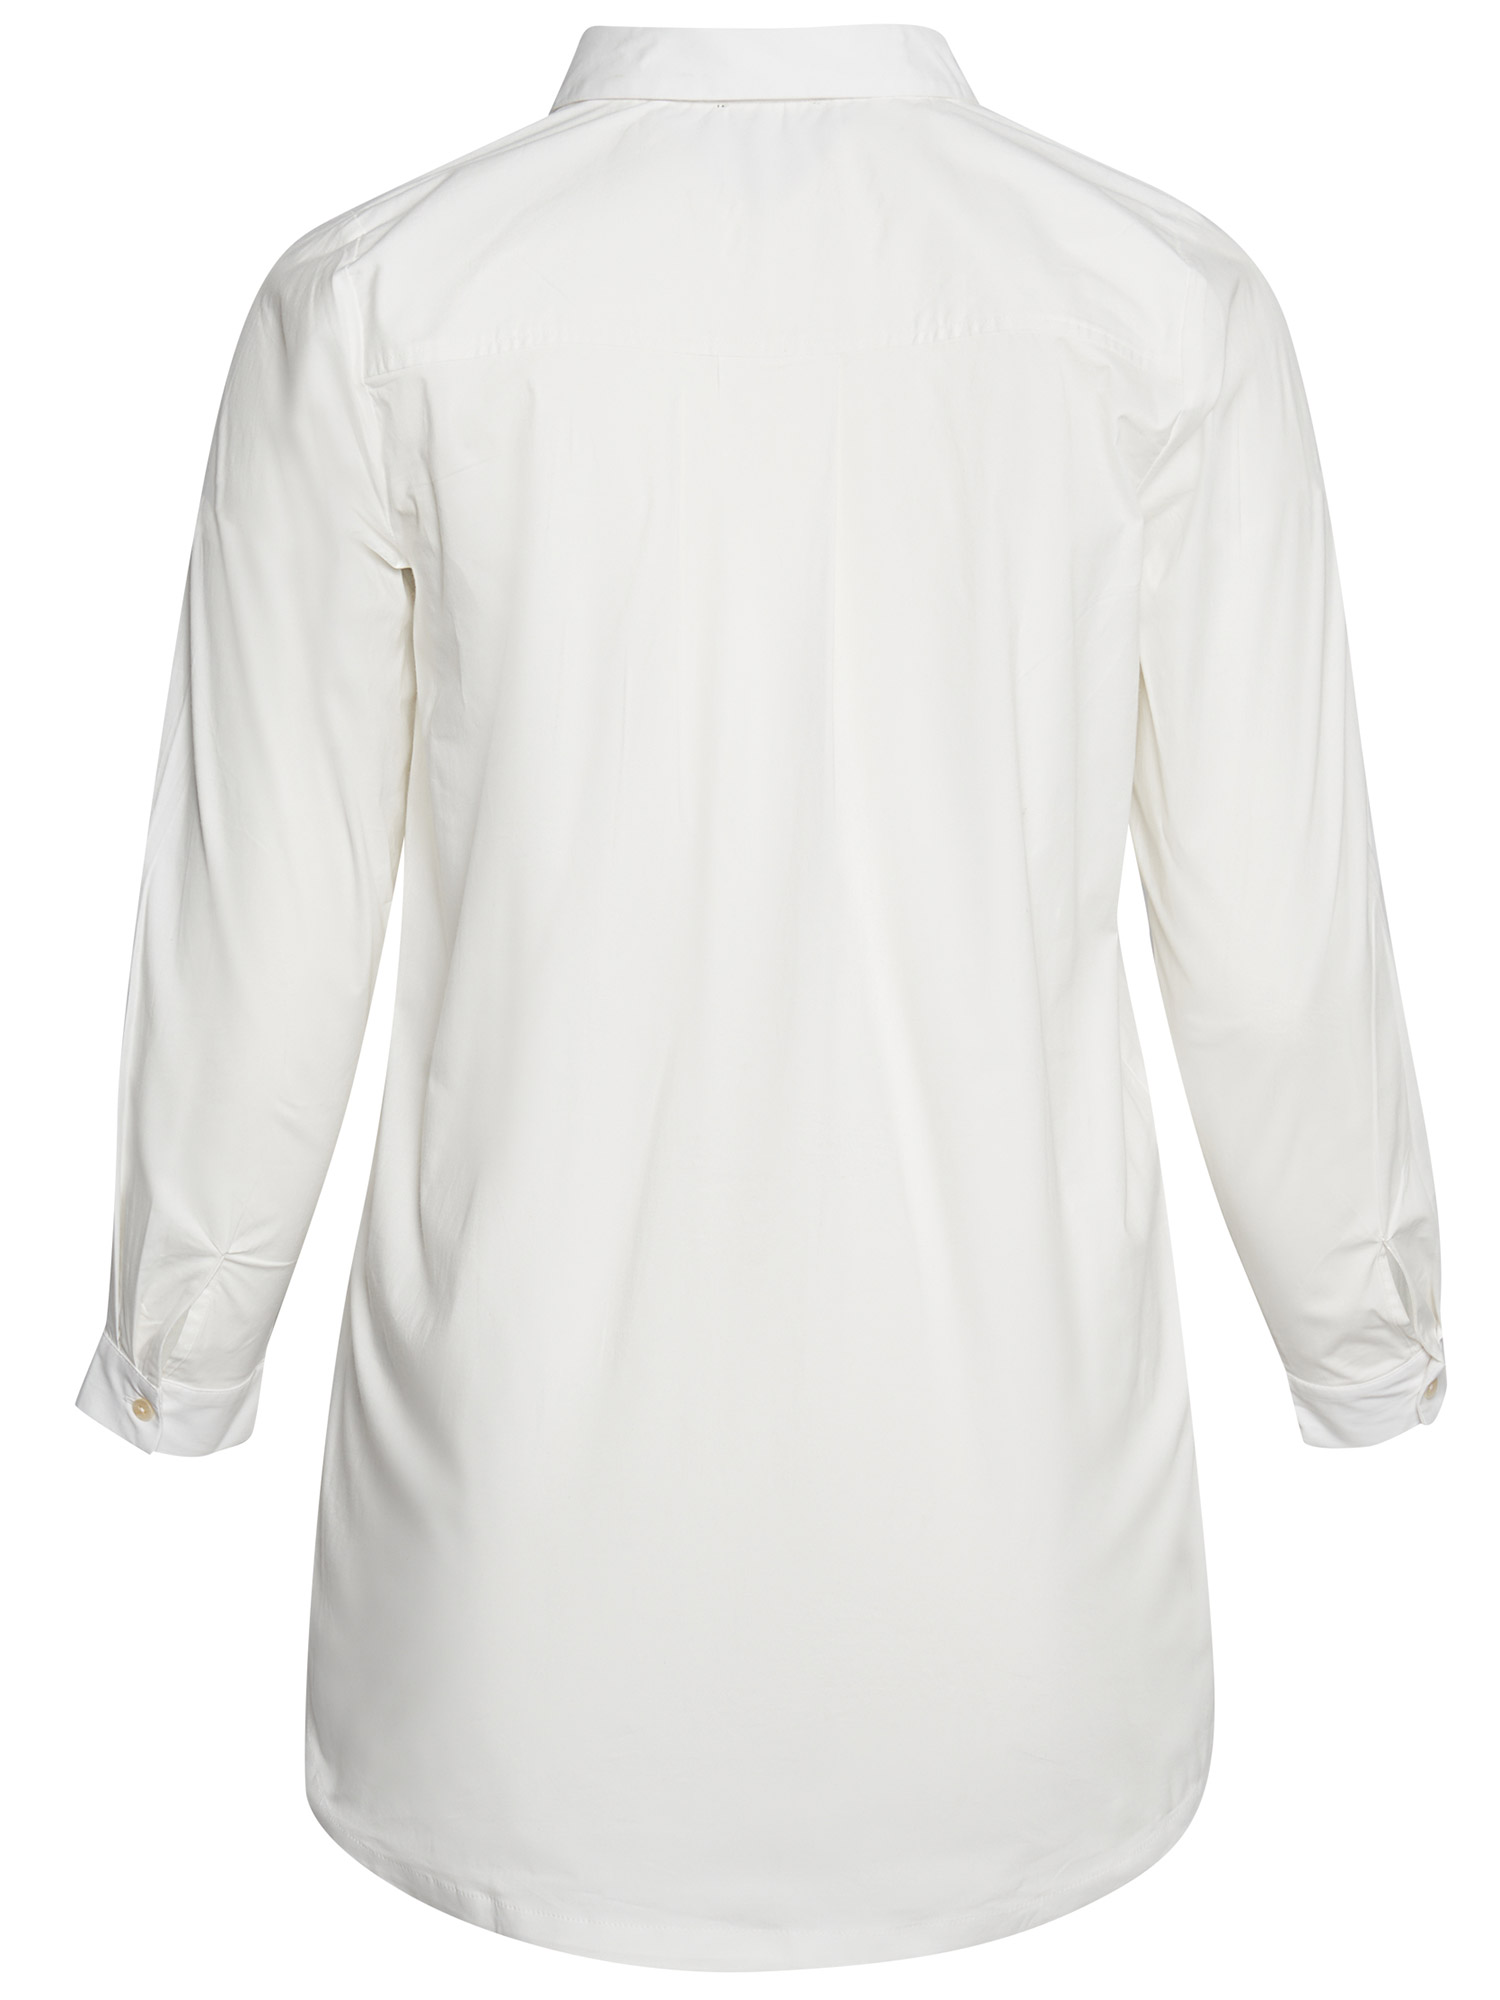 Virginia - Hvit bomulls skjorte med stretch fra Aprico